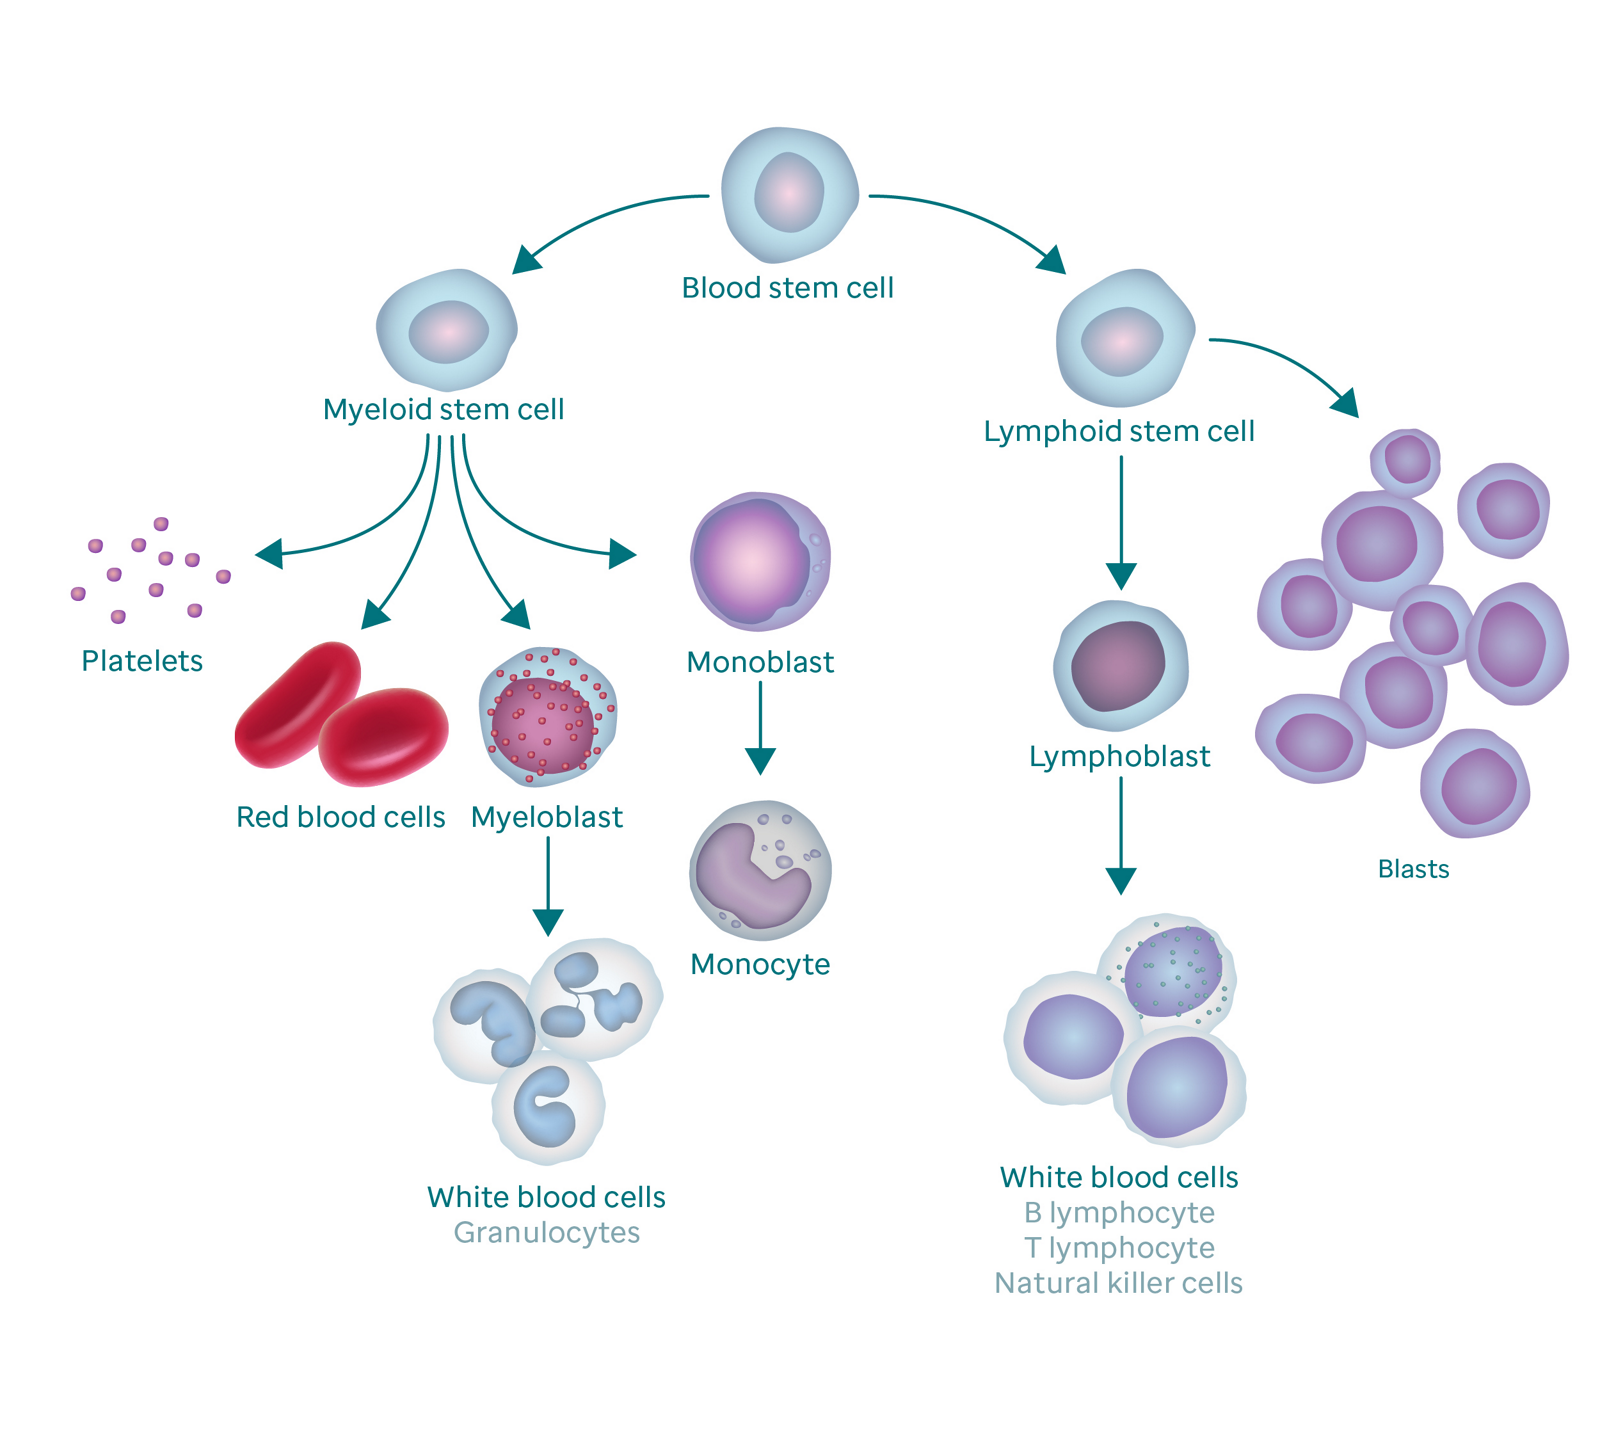 رسم يوضح عملية تكوين الدم وكيف ينتج عنها خلايا انفجارية.  يبدأ الرسم بخلية دم جذعية.  إلى اليسار ، تتفرع إلى الخلايا الجذعية النخاعية ، والتي تتفرع إلى الصفائح الدموية وخلايا الدم الحمراء والأرومة النخاعية والأرومة الأحادية.  تتحول الأرومة النخاعية إلى خلايا الدم البيضاء (وتسمى أيضًا الخلايا المحببة) وتتحول الأرومة الأحادية إلى خلية واحدة.  يذهب الفرع الأيمن من خلايا الدم الجذعية إلى الخلايا الجذعية اللمفاوية ، والتي تتفرع إلى أرومات ليمفاوية (تتحول إلى خلايا دم بيضاء) وخلايا انفجارية.